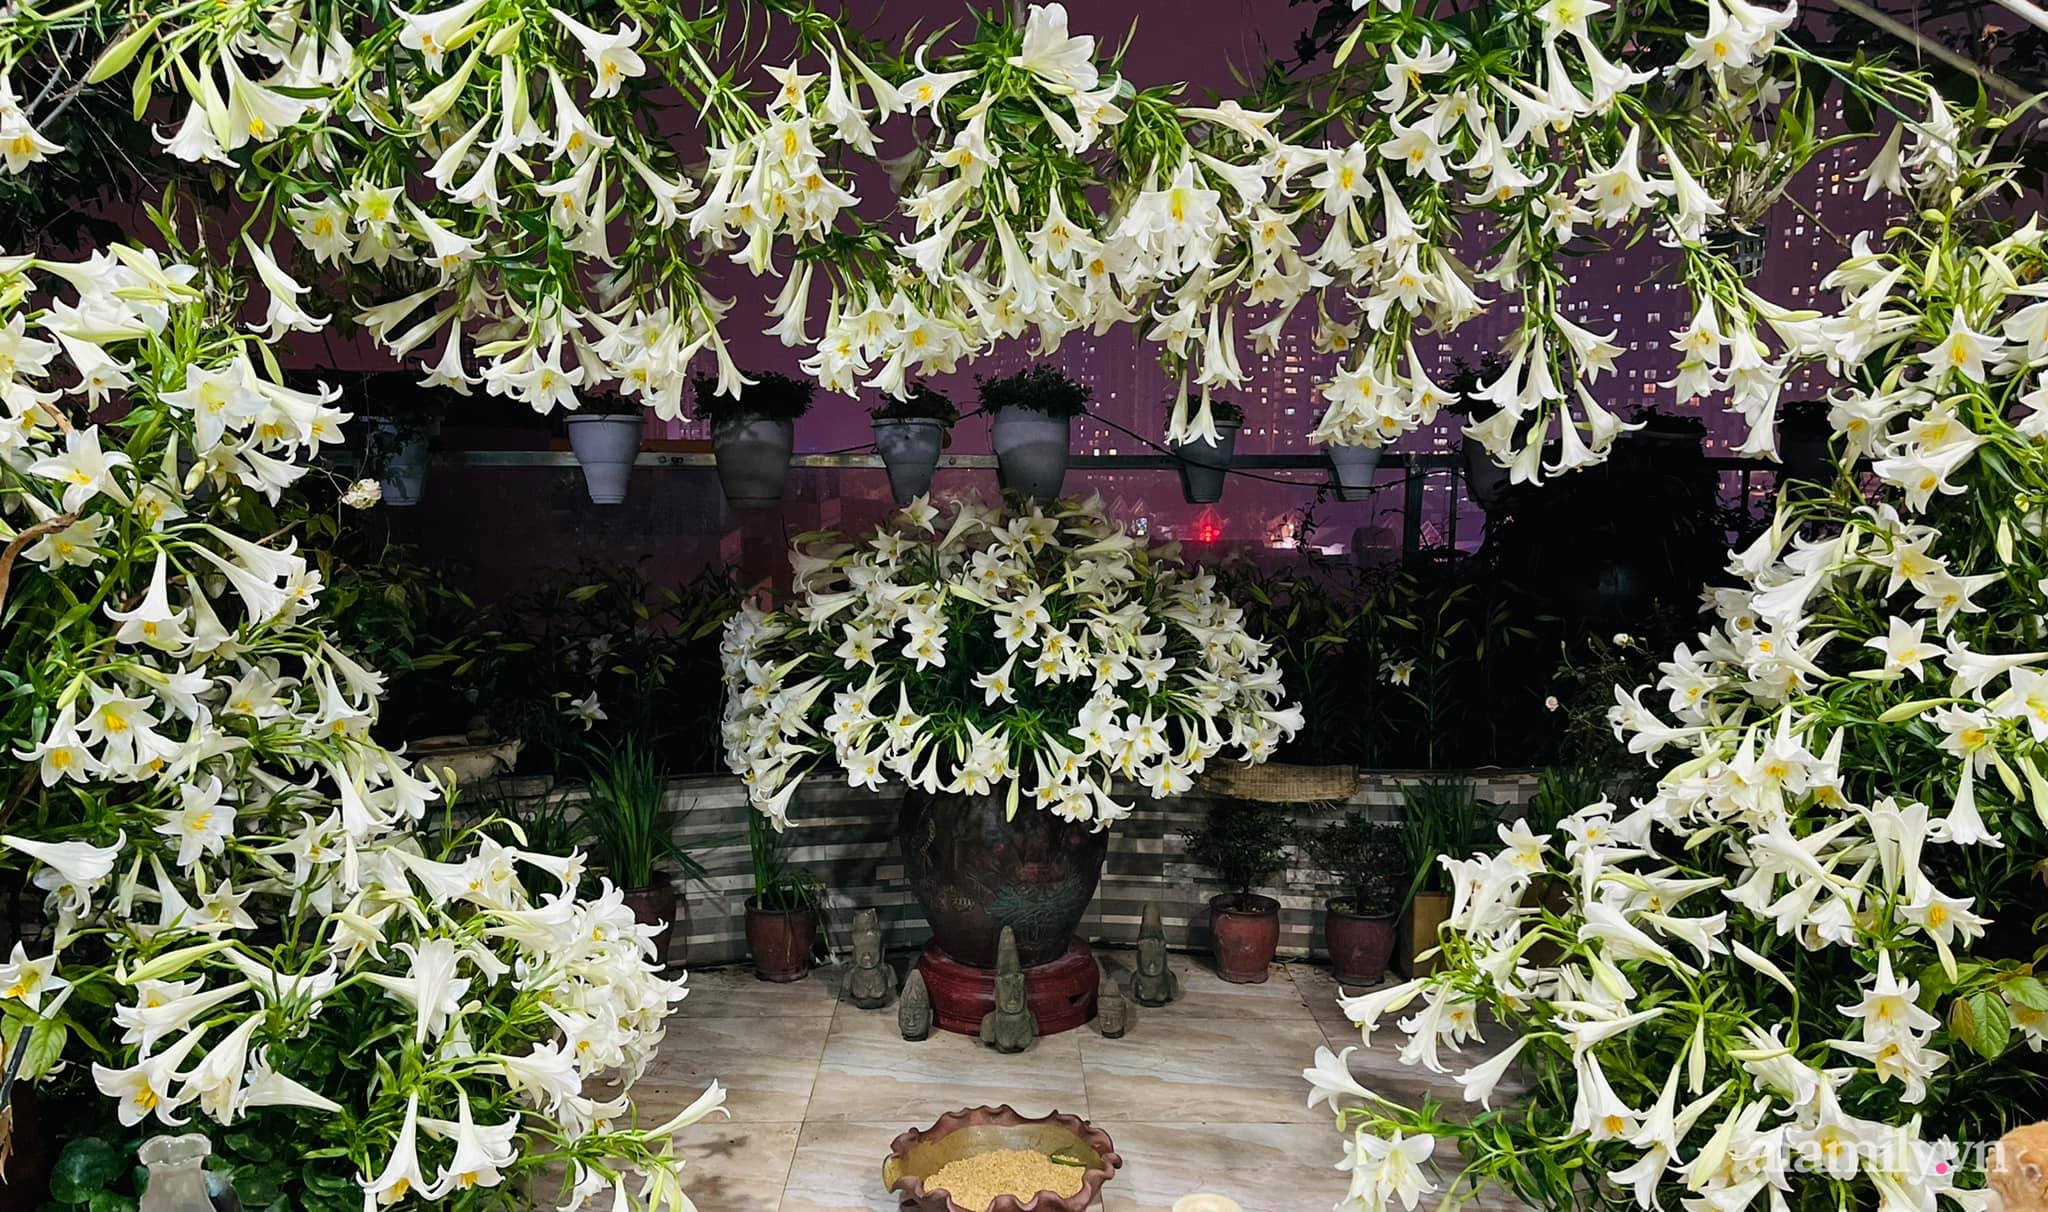 Sân thượng tháng 4 đẹp thanh khiết dịu dàng với 3500 bông loa kèn tỏa sắc hương nhờ bàn tay khéo léo của người phụ nữ Hà Thành - Ảnh 19.